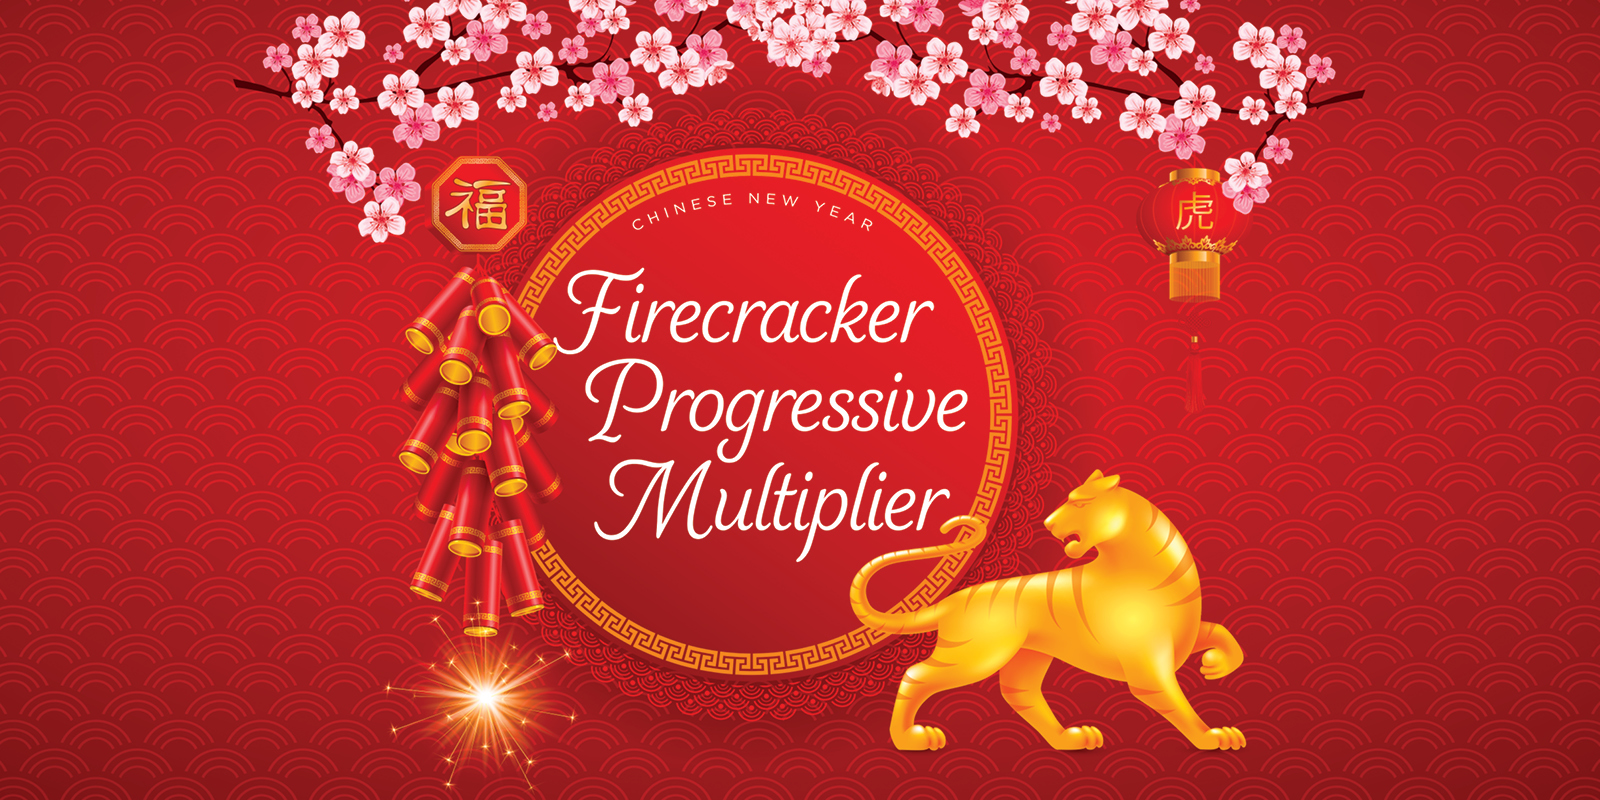 Firecracker Progressive Multiplier